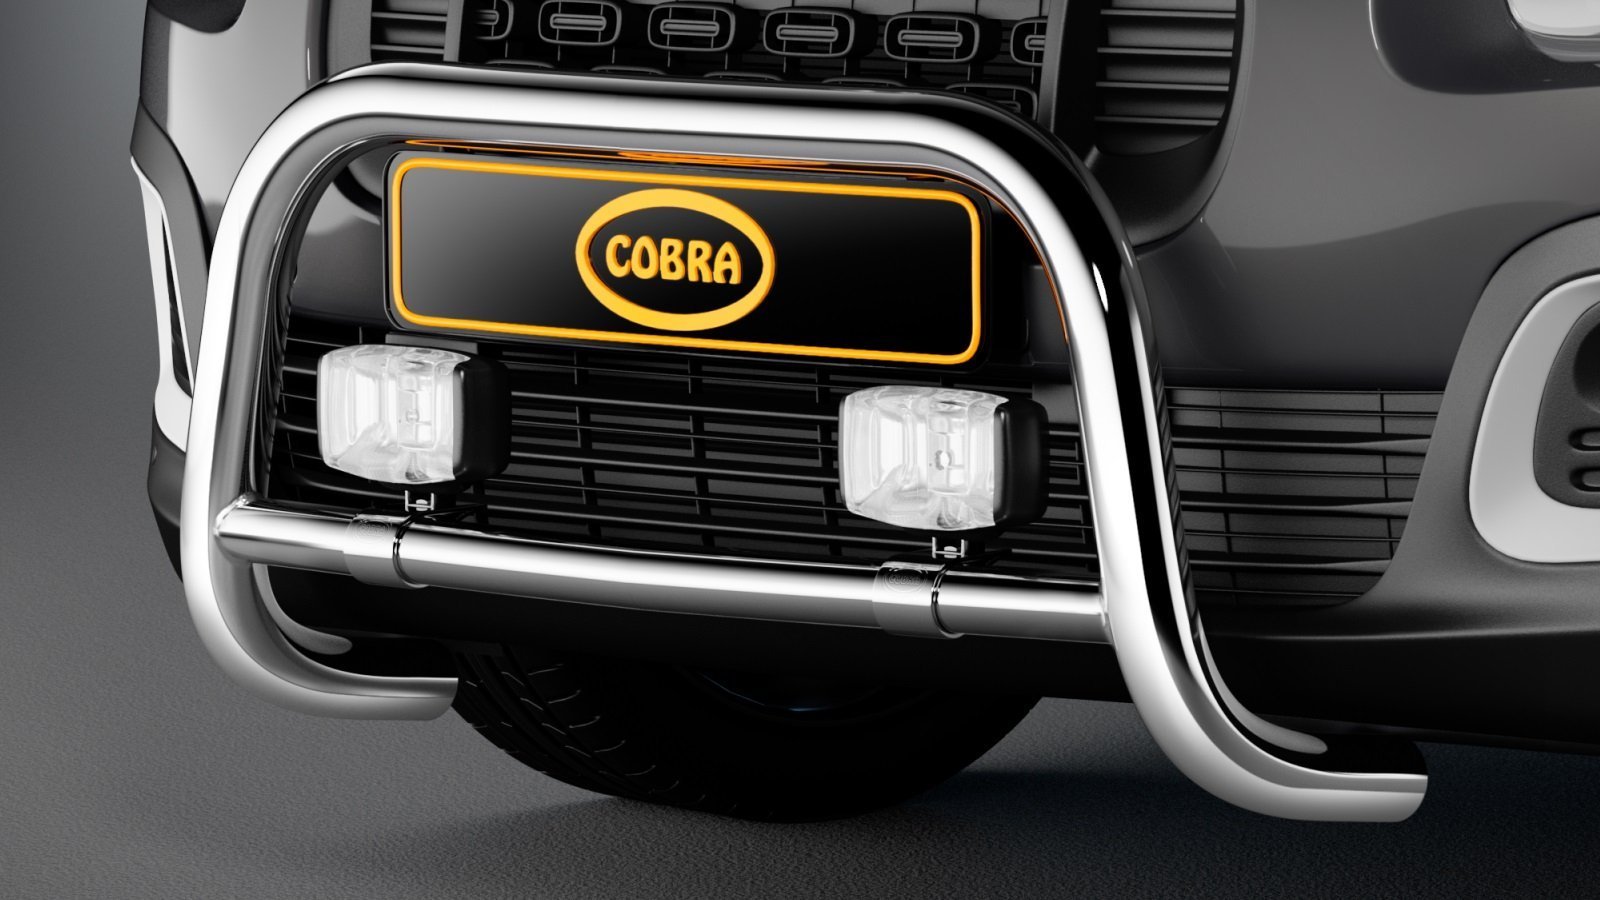 Opel Combo EU-Front guard (Cobra)